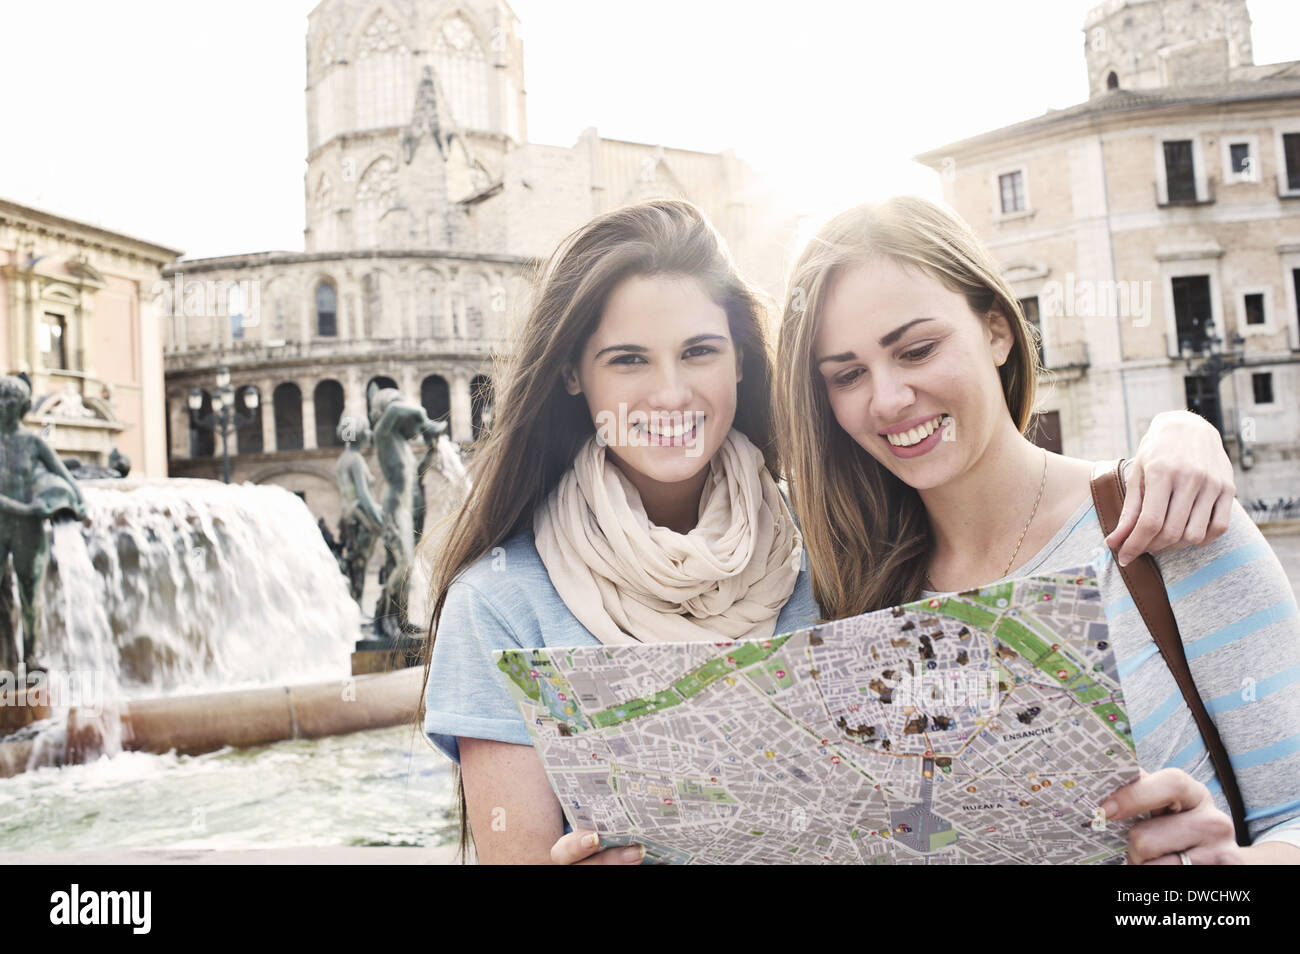 Deux femmes touristes looking at map, Plaza de la Virgen, Valencia, Espagne Banque D'Images